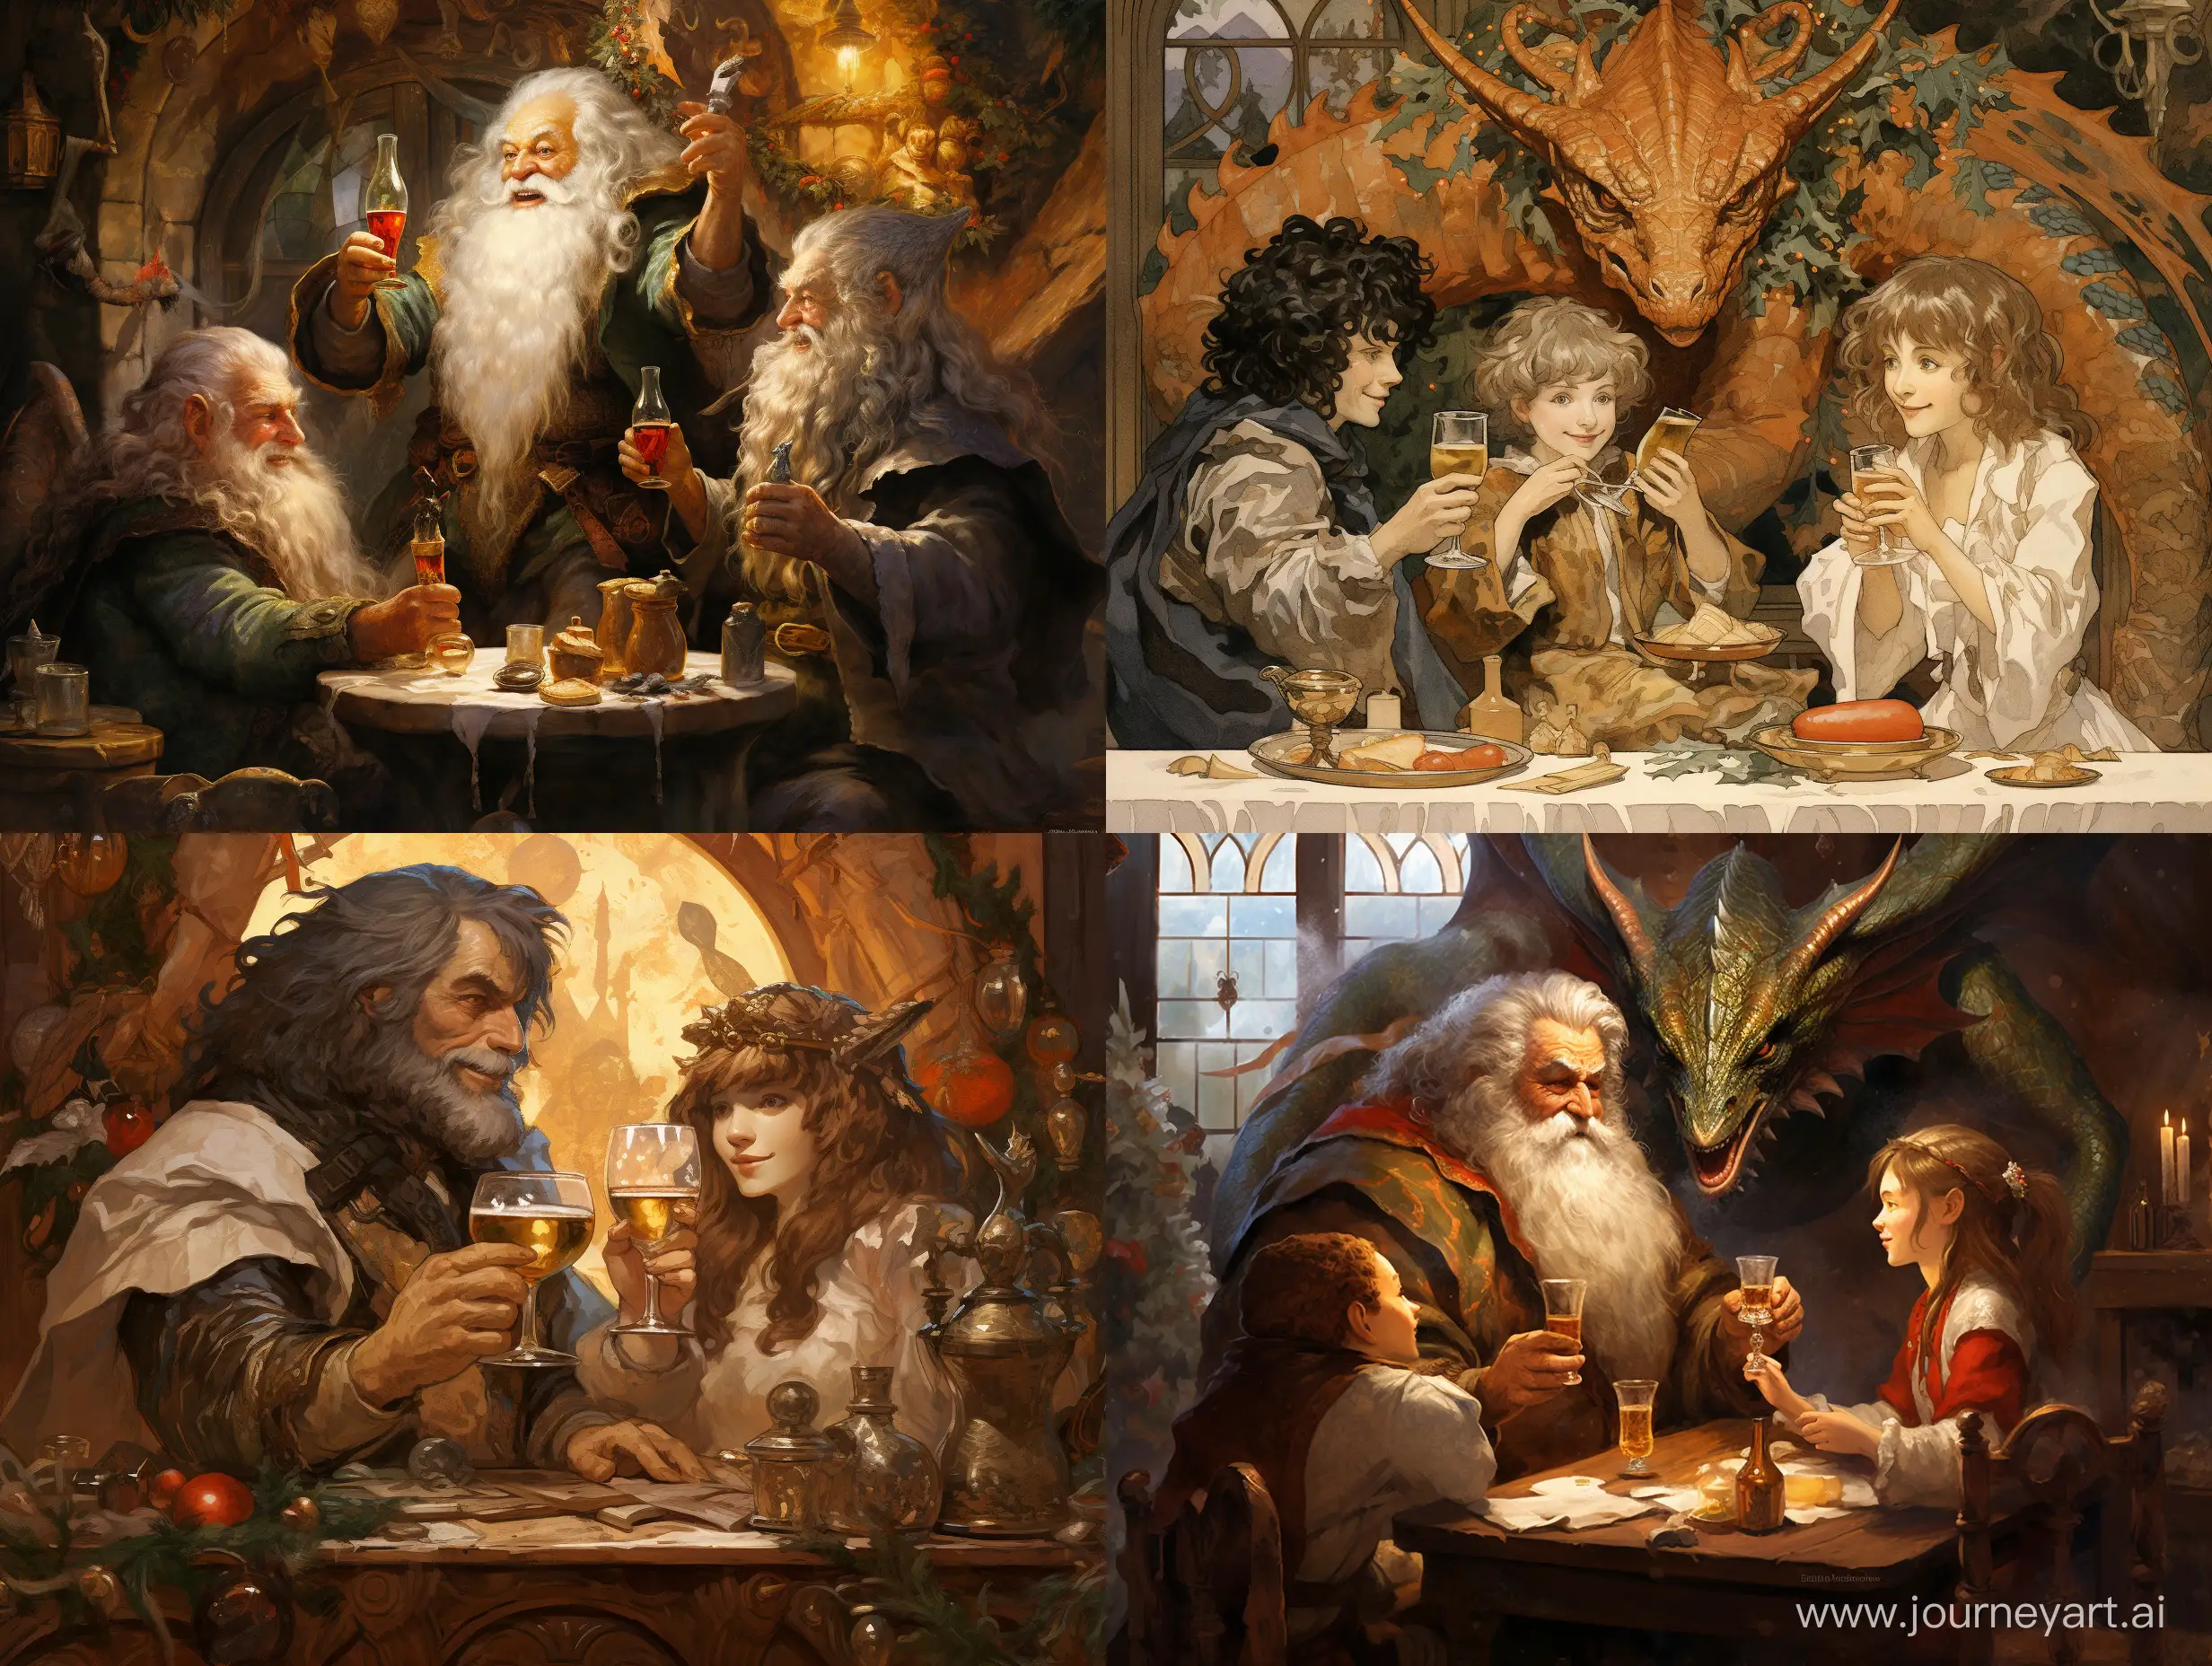 Хоббит, Гном, Эльф и Дракон обсуждают планы возле новогодней ёлки на будущий год с шампансим